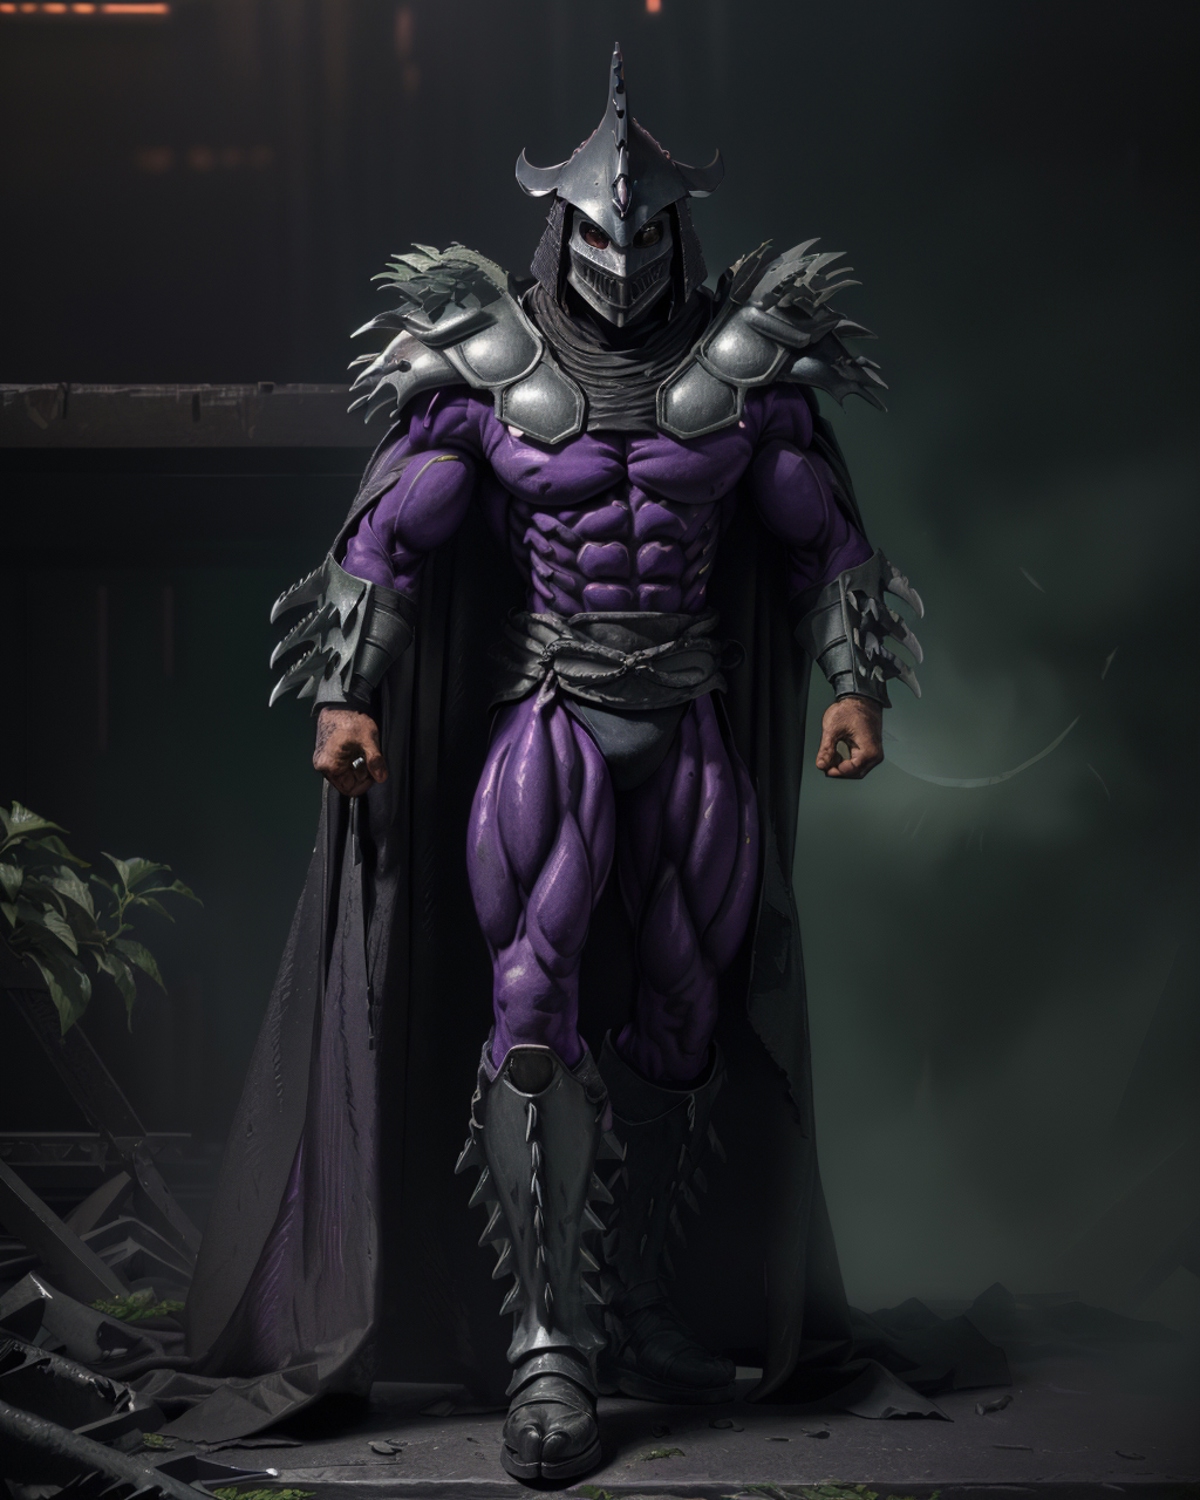 TMNT Super Shredder image by ArchAngelAries